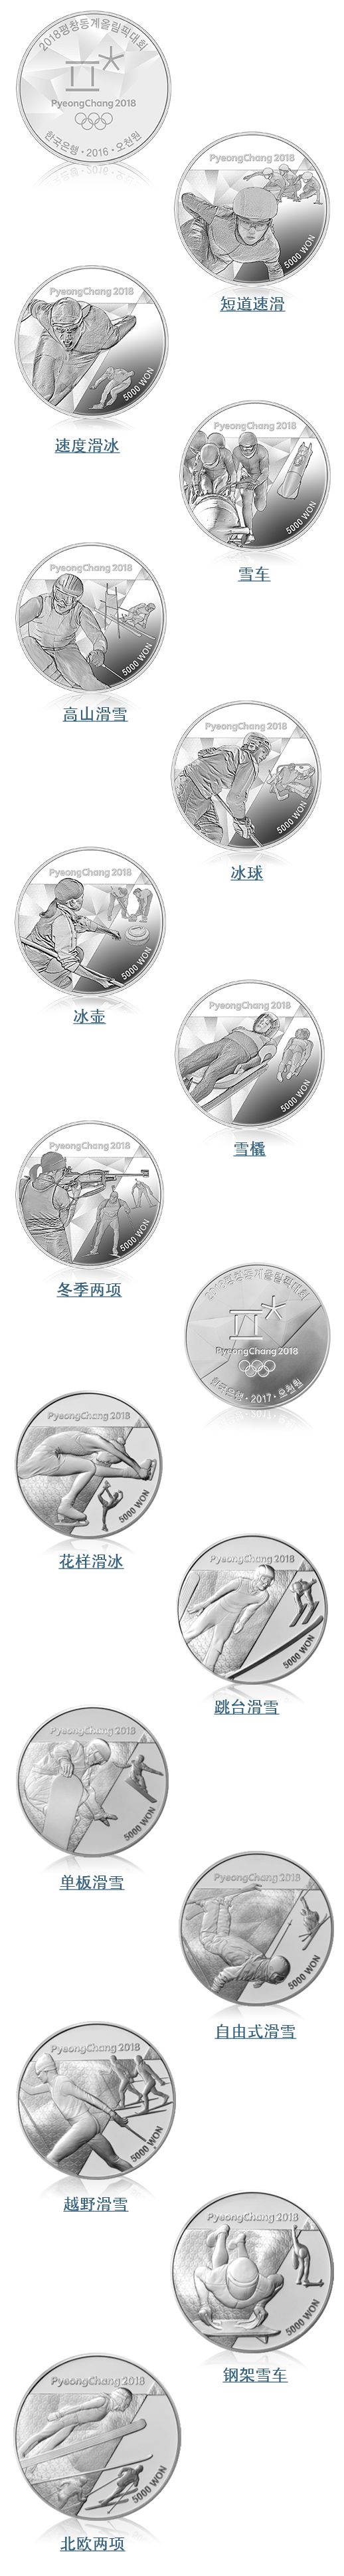 中国银行将销售2018年平昌冬奥会纪念币